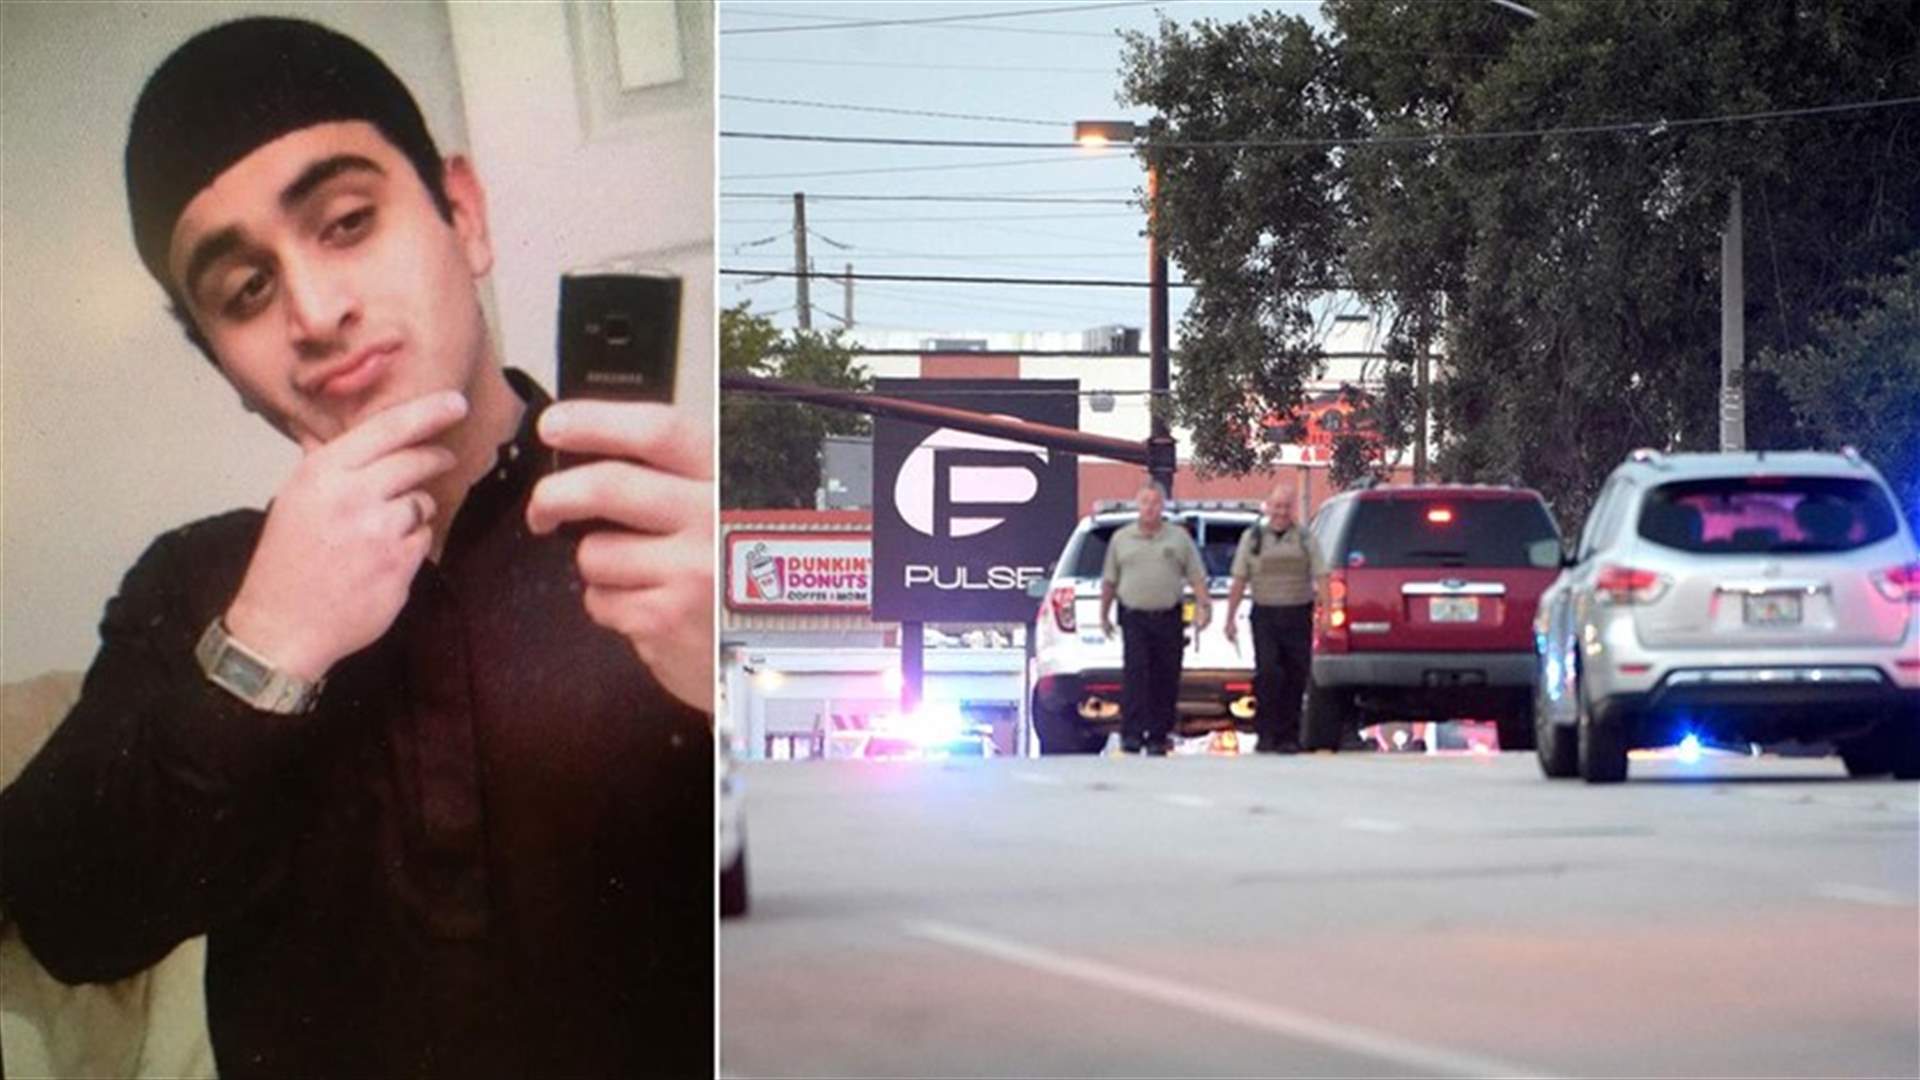 Orlando nightclub gunman seen as self-radicalized